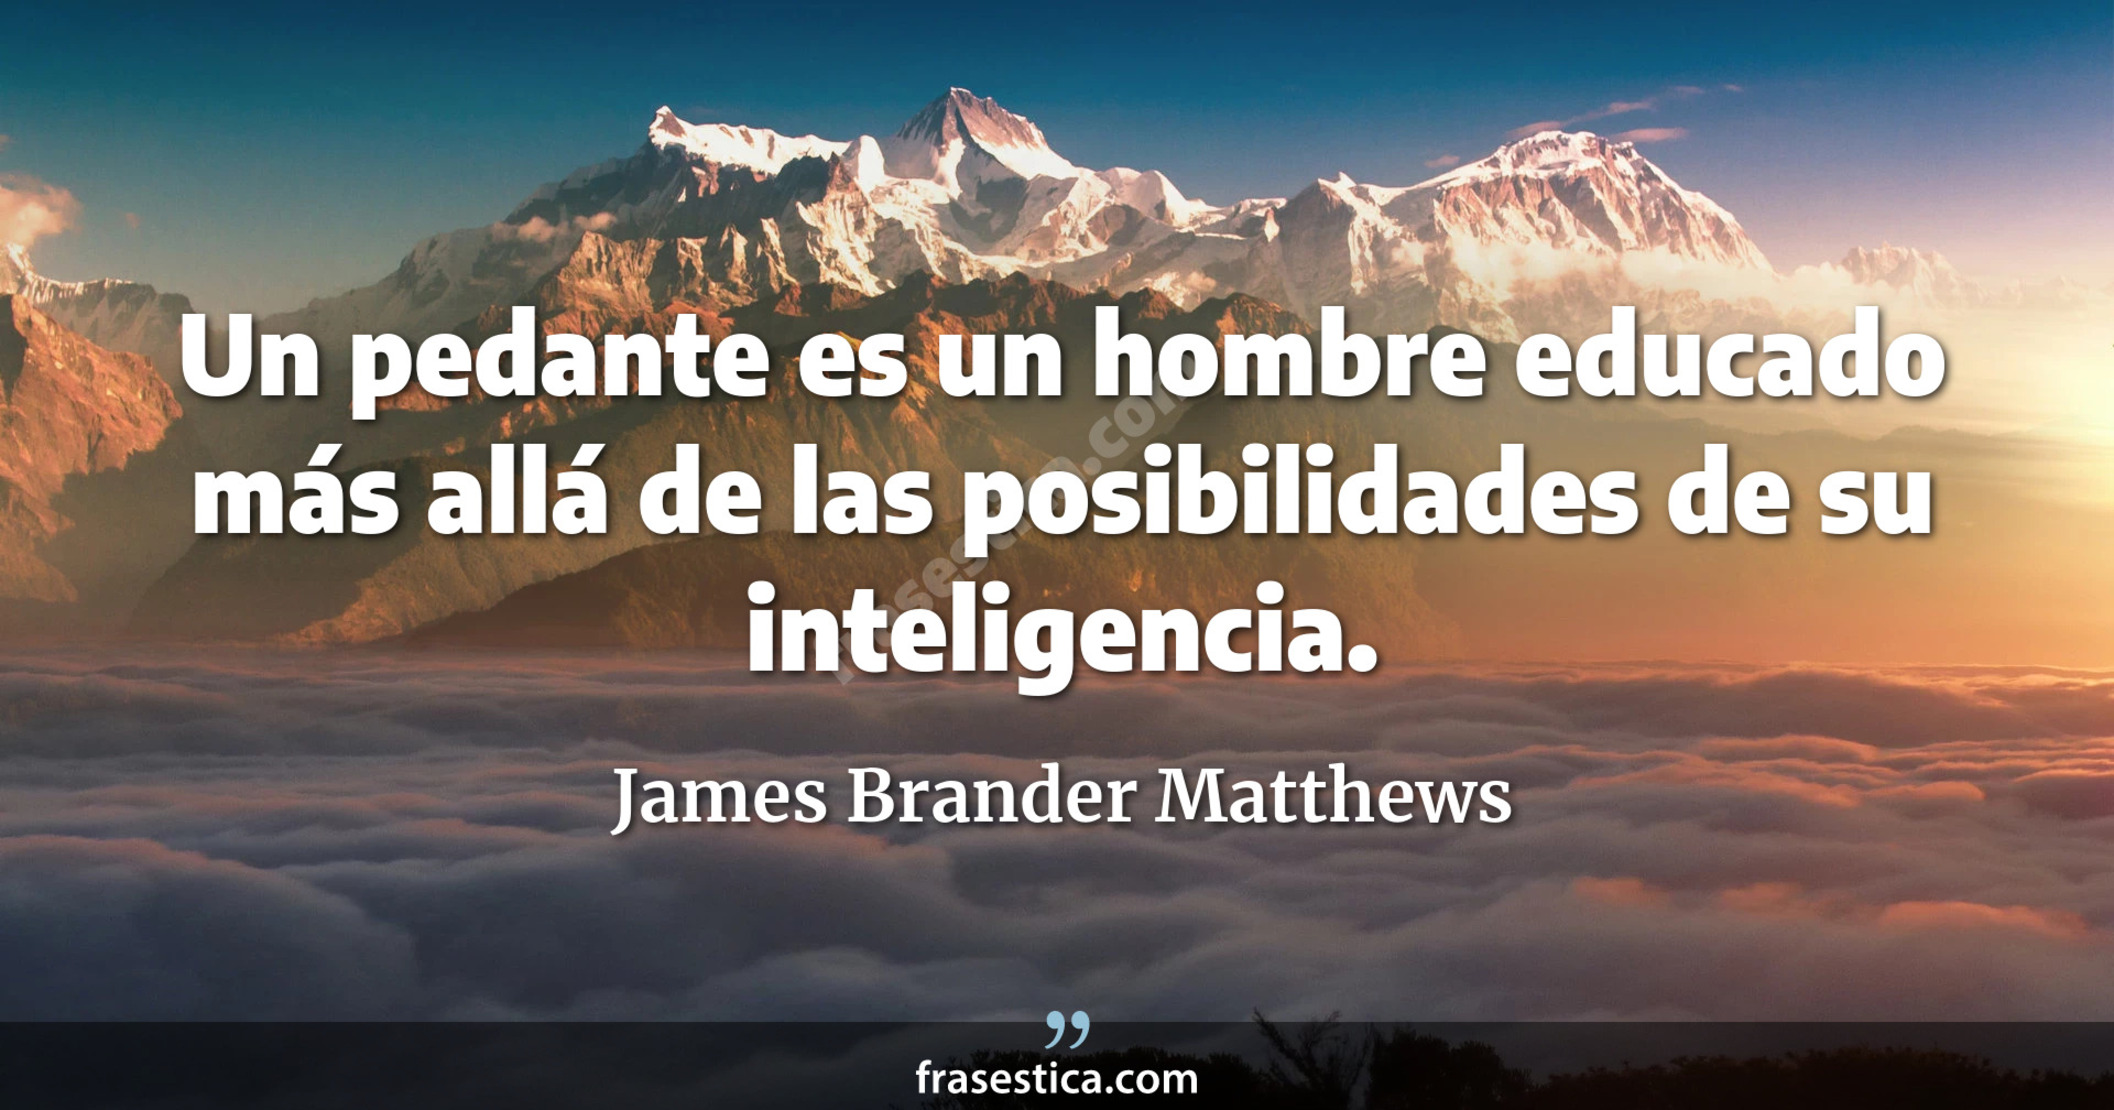 Un pedante es un hombre educado más allá de las posibilidades de su inteligencia. - James Brander Matthews